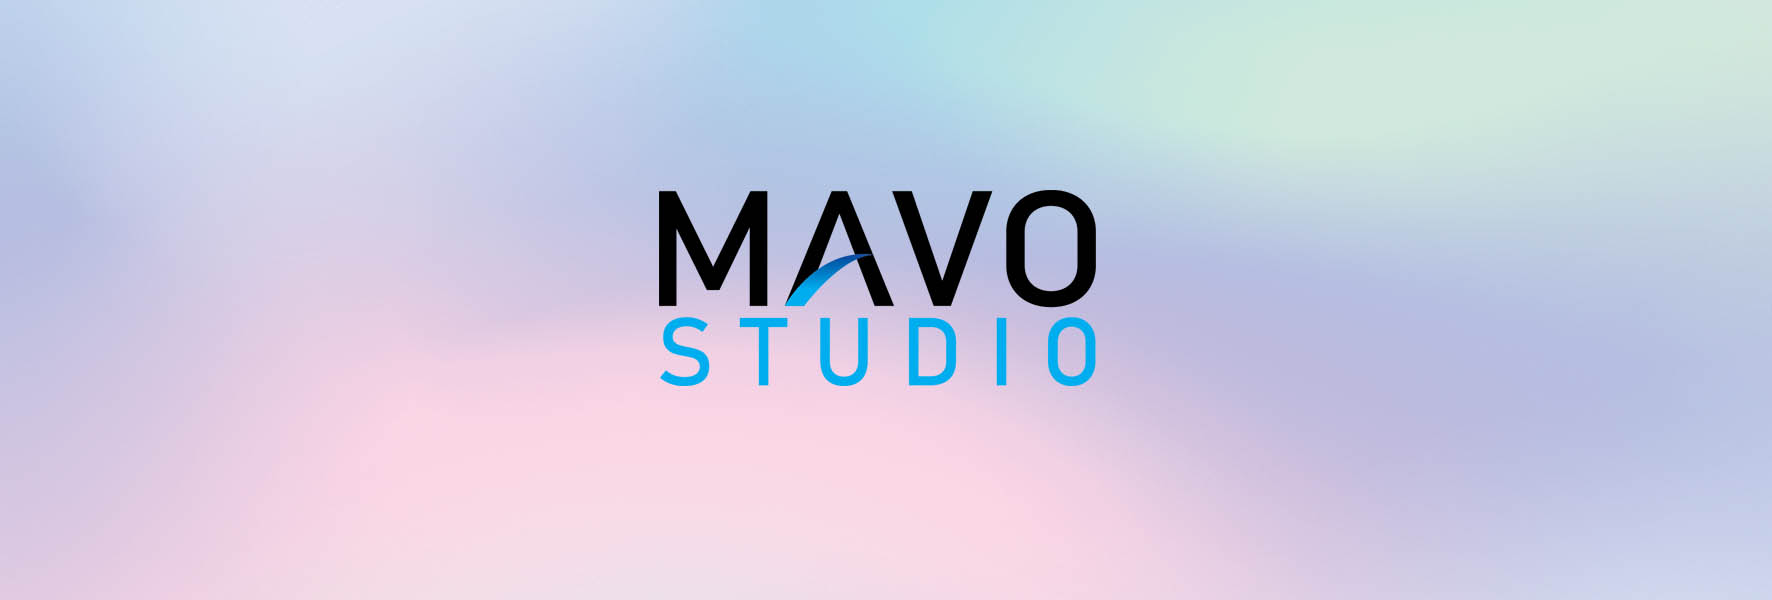 Mavo Studio